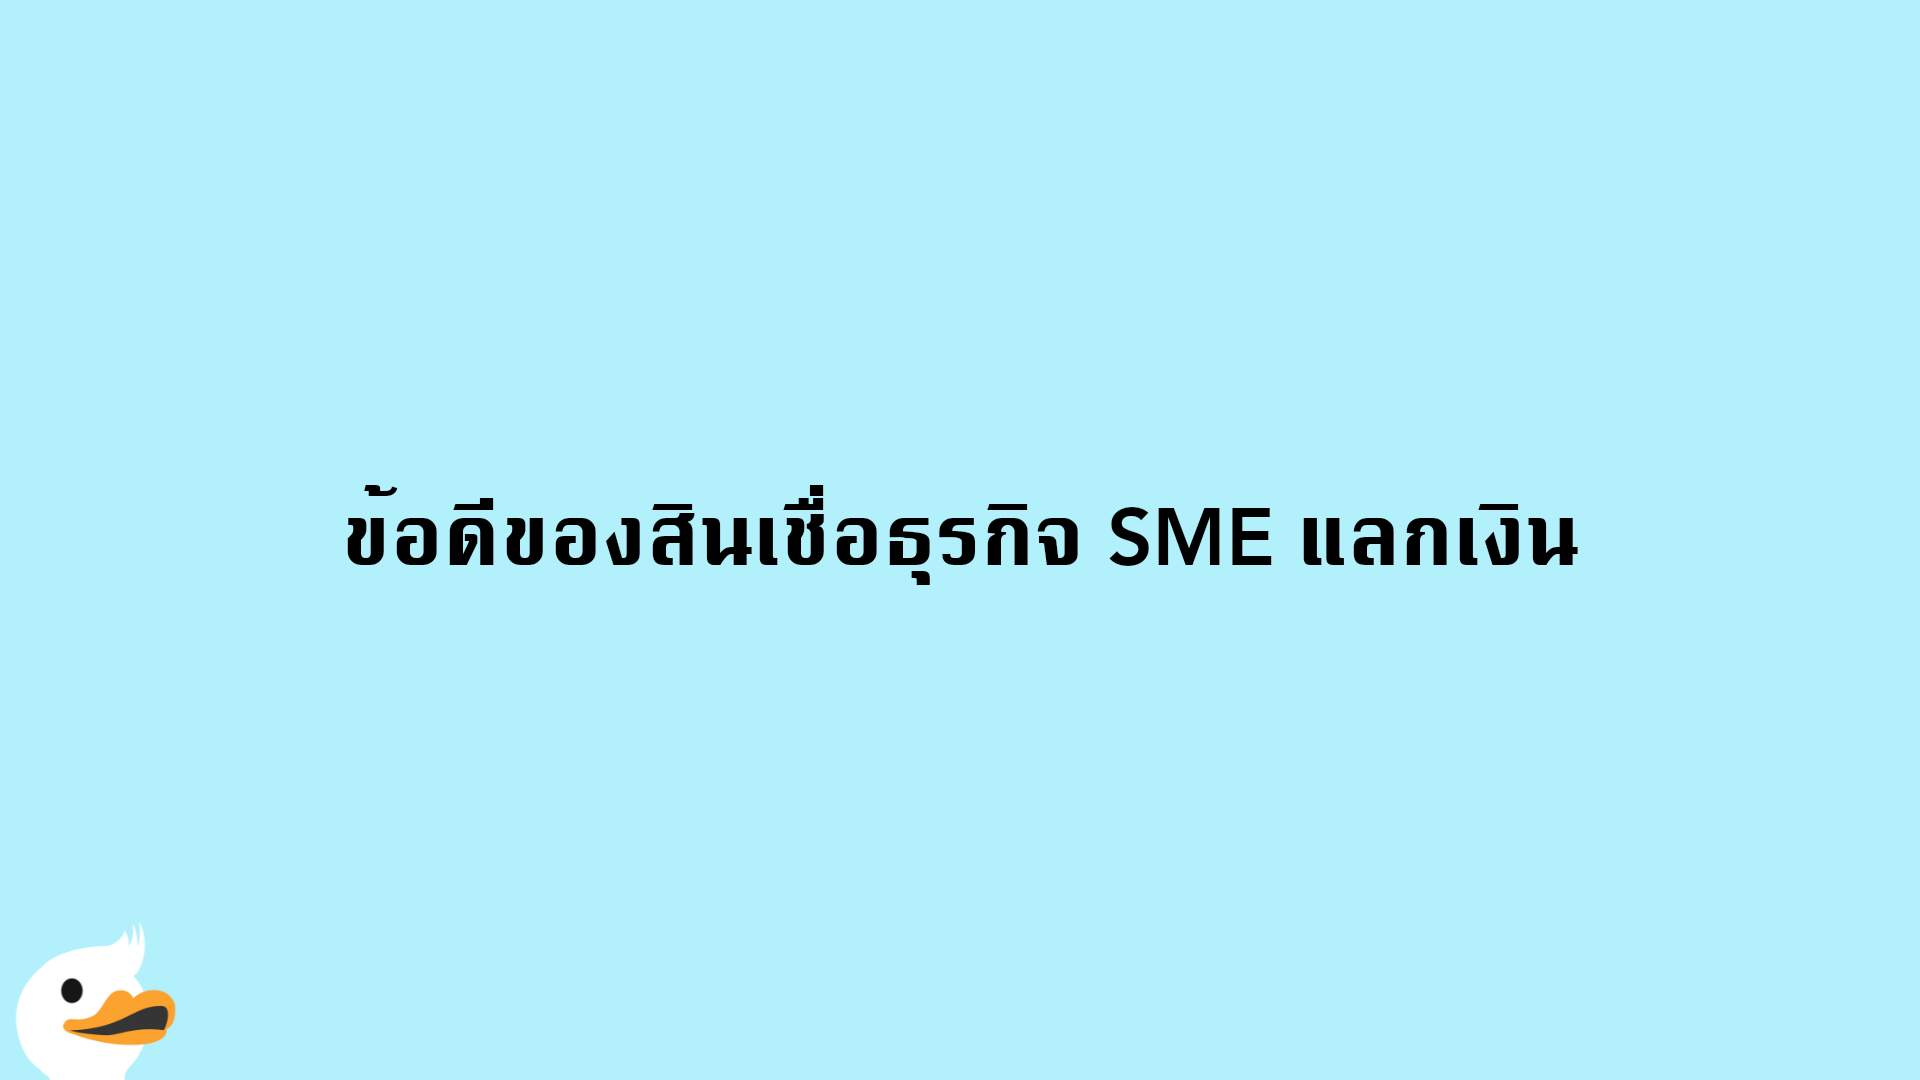 ข้อดีของสินเชื่อธุรกิจ SME แลกเงิน